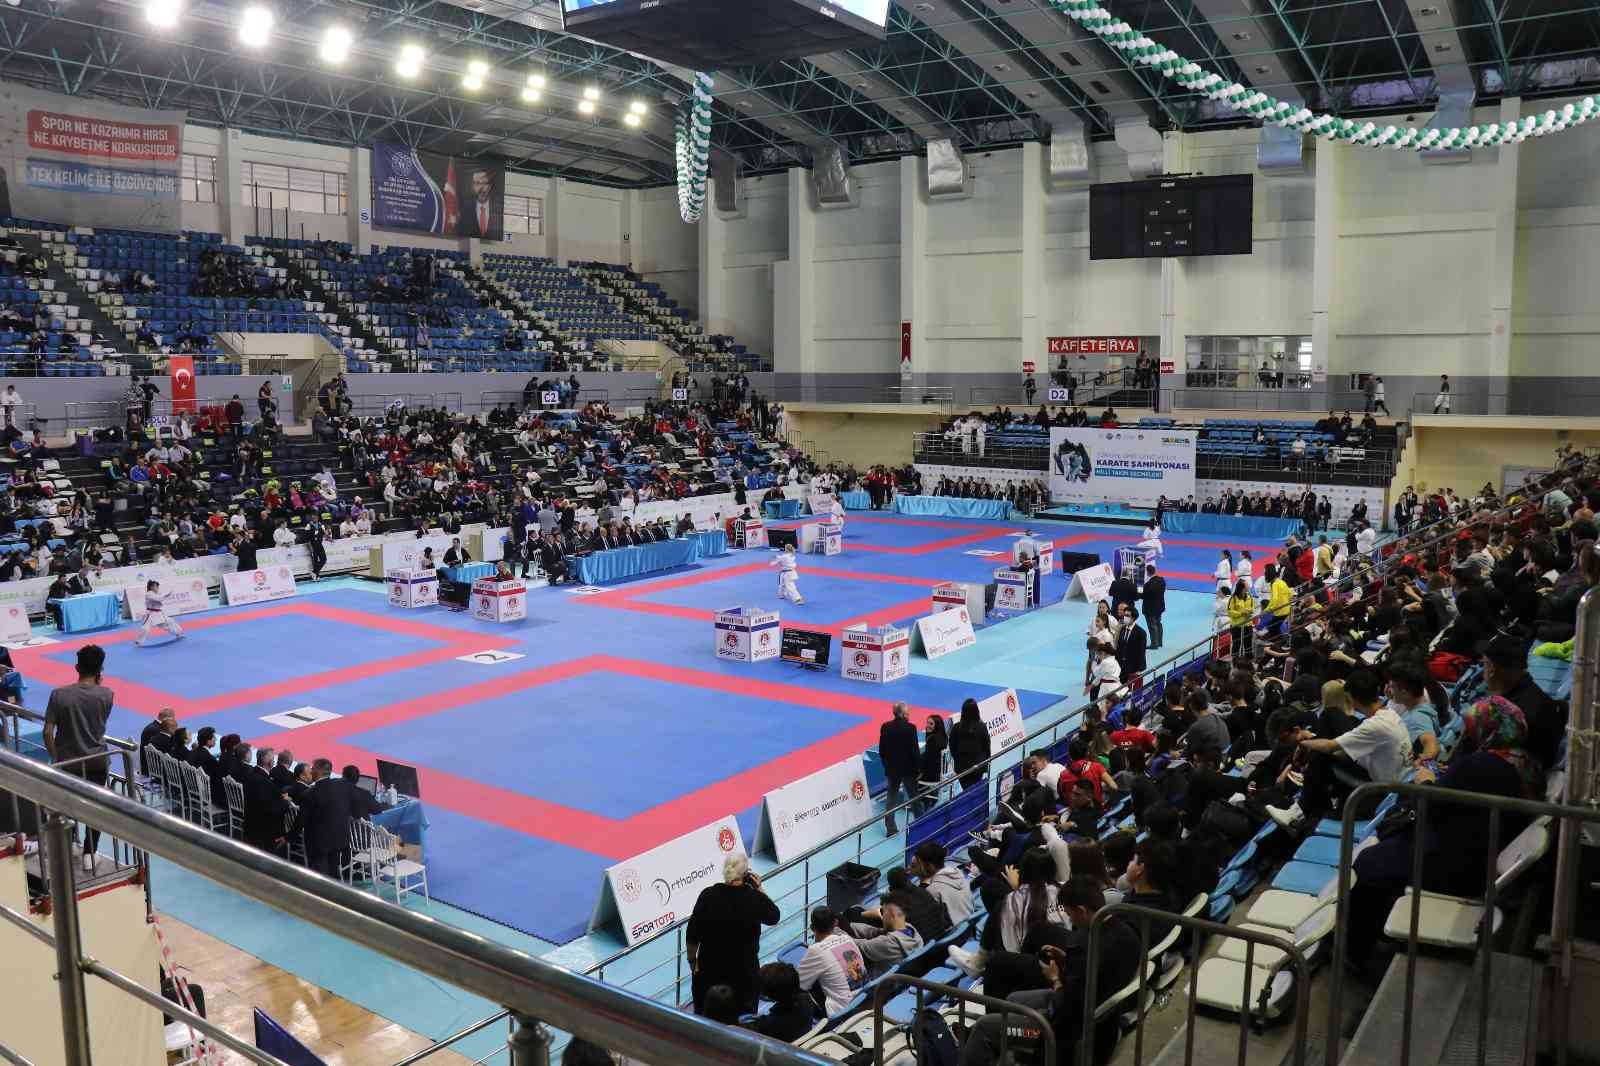 Türkiye Karate Federasyonu tarafından Sakarya’da düzenlenen Türkiye Ümit, Genç ve 21 Yaş Altı Karate Şampiyonası ve milli takım seçmeleri ...